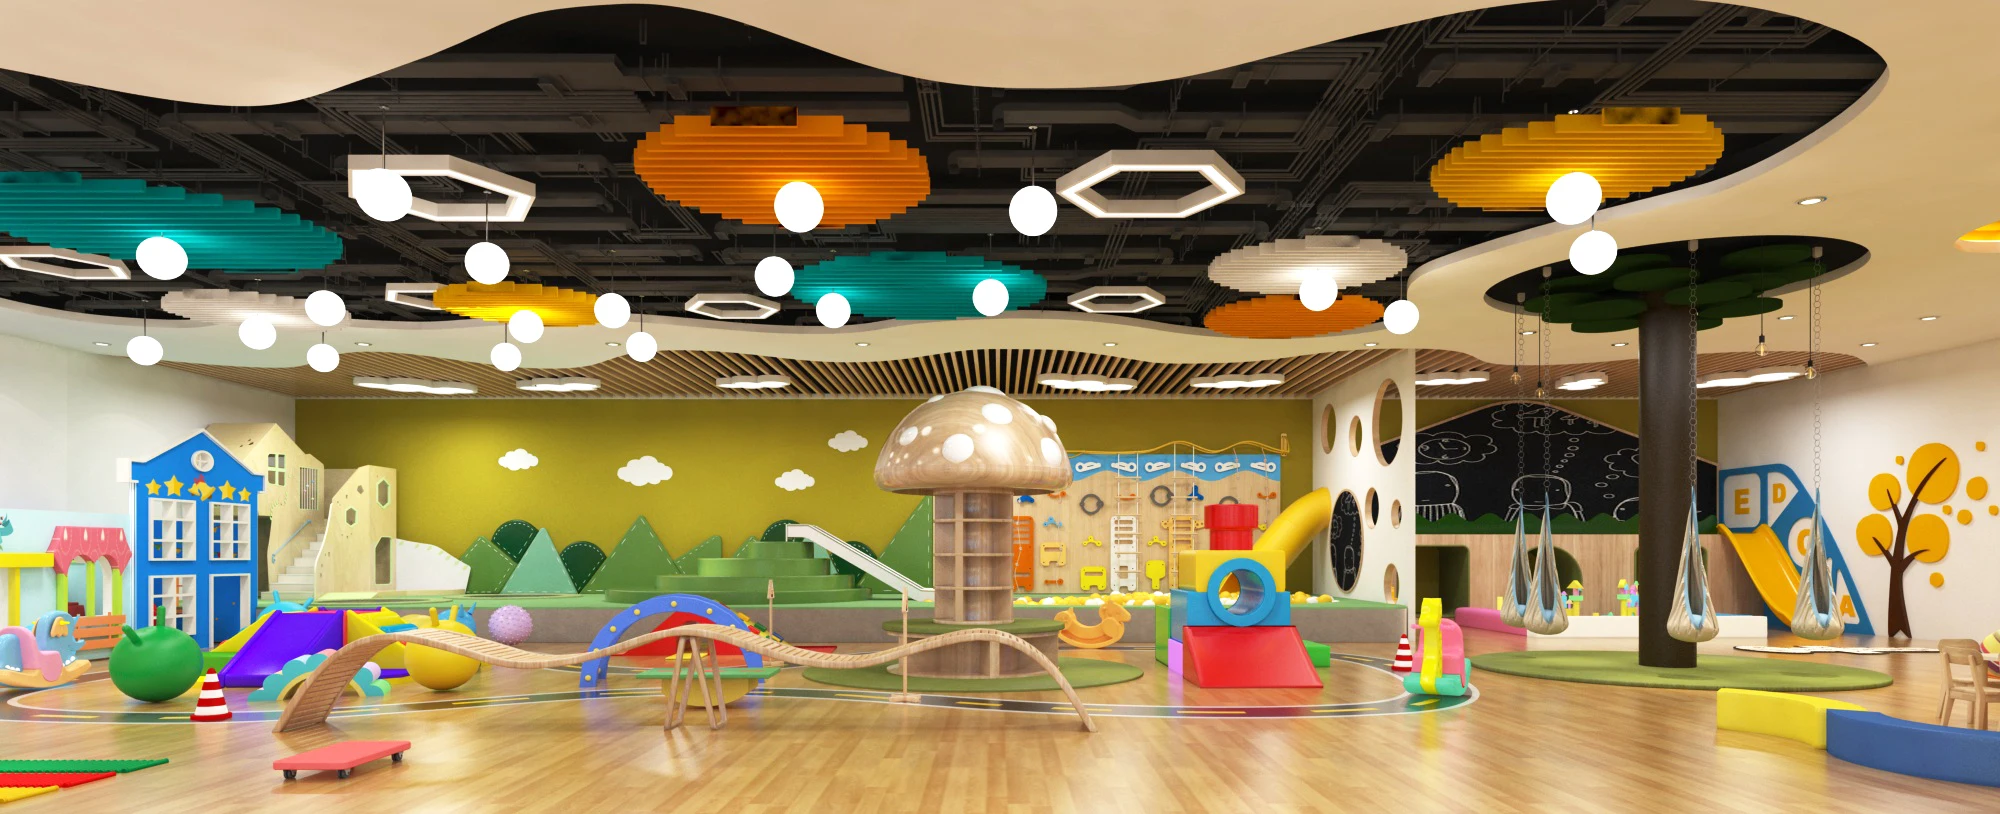 孩子们假装玩娱乐中心为儿童定制主题室内游乐场